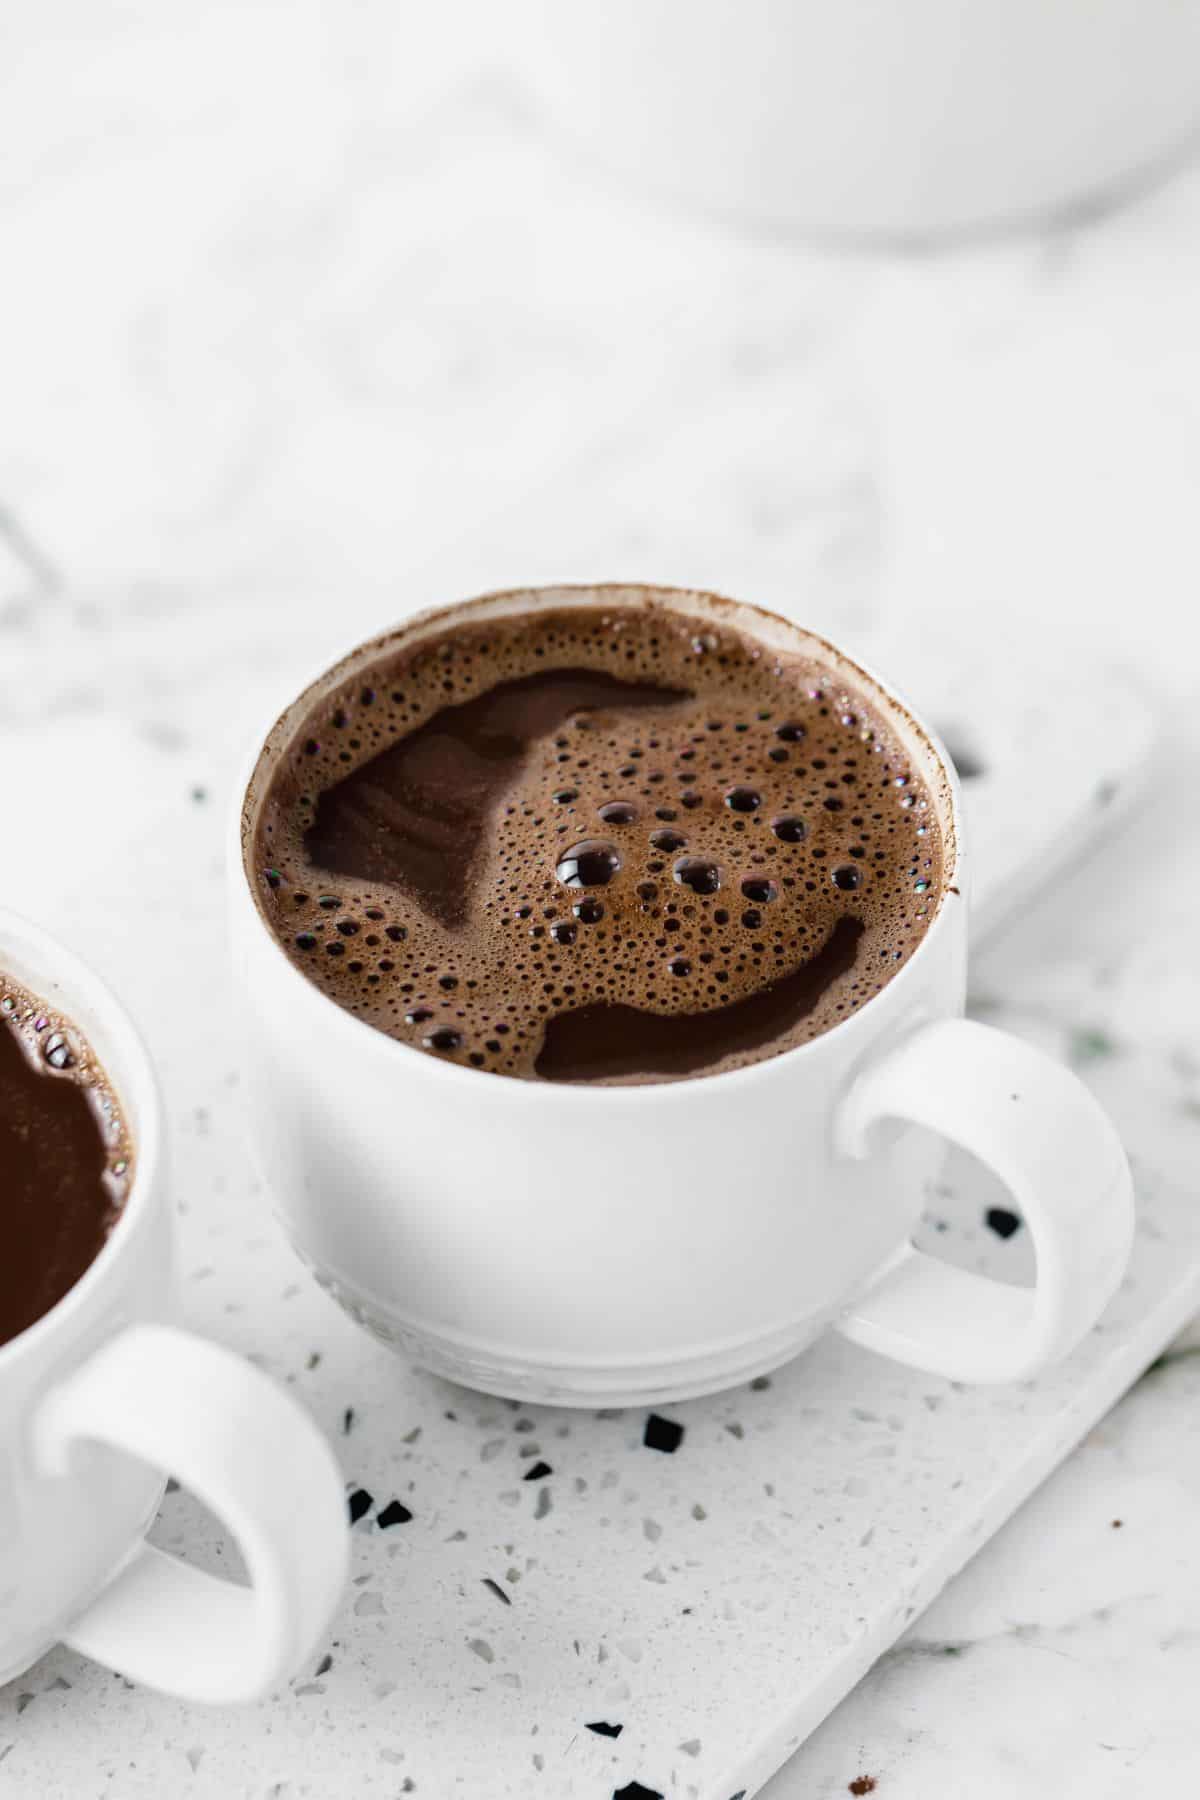 Mug full of hot chocolate on white surface.